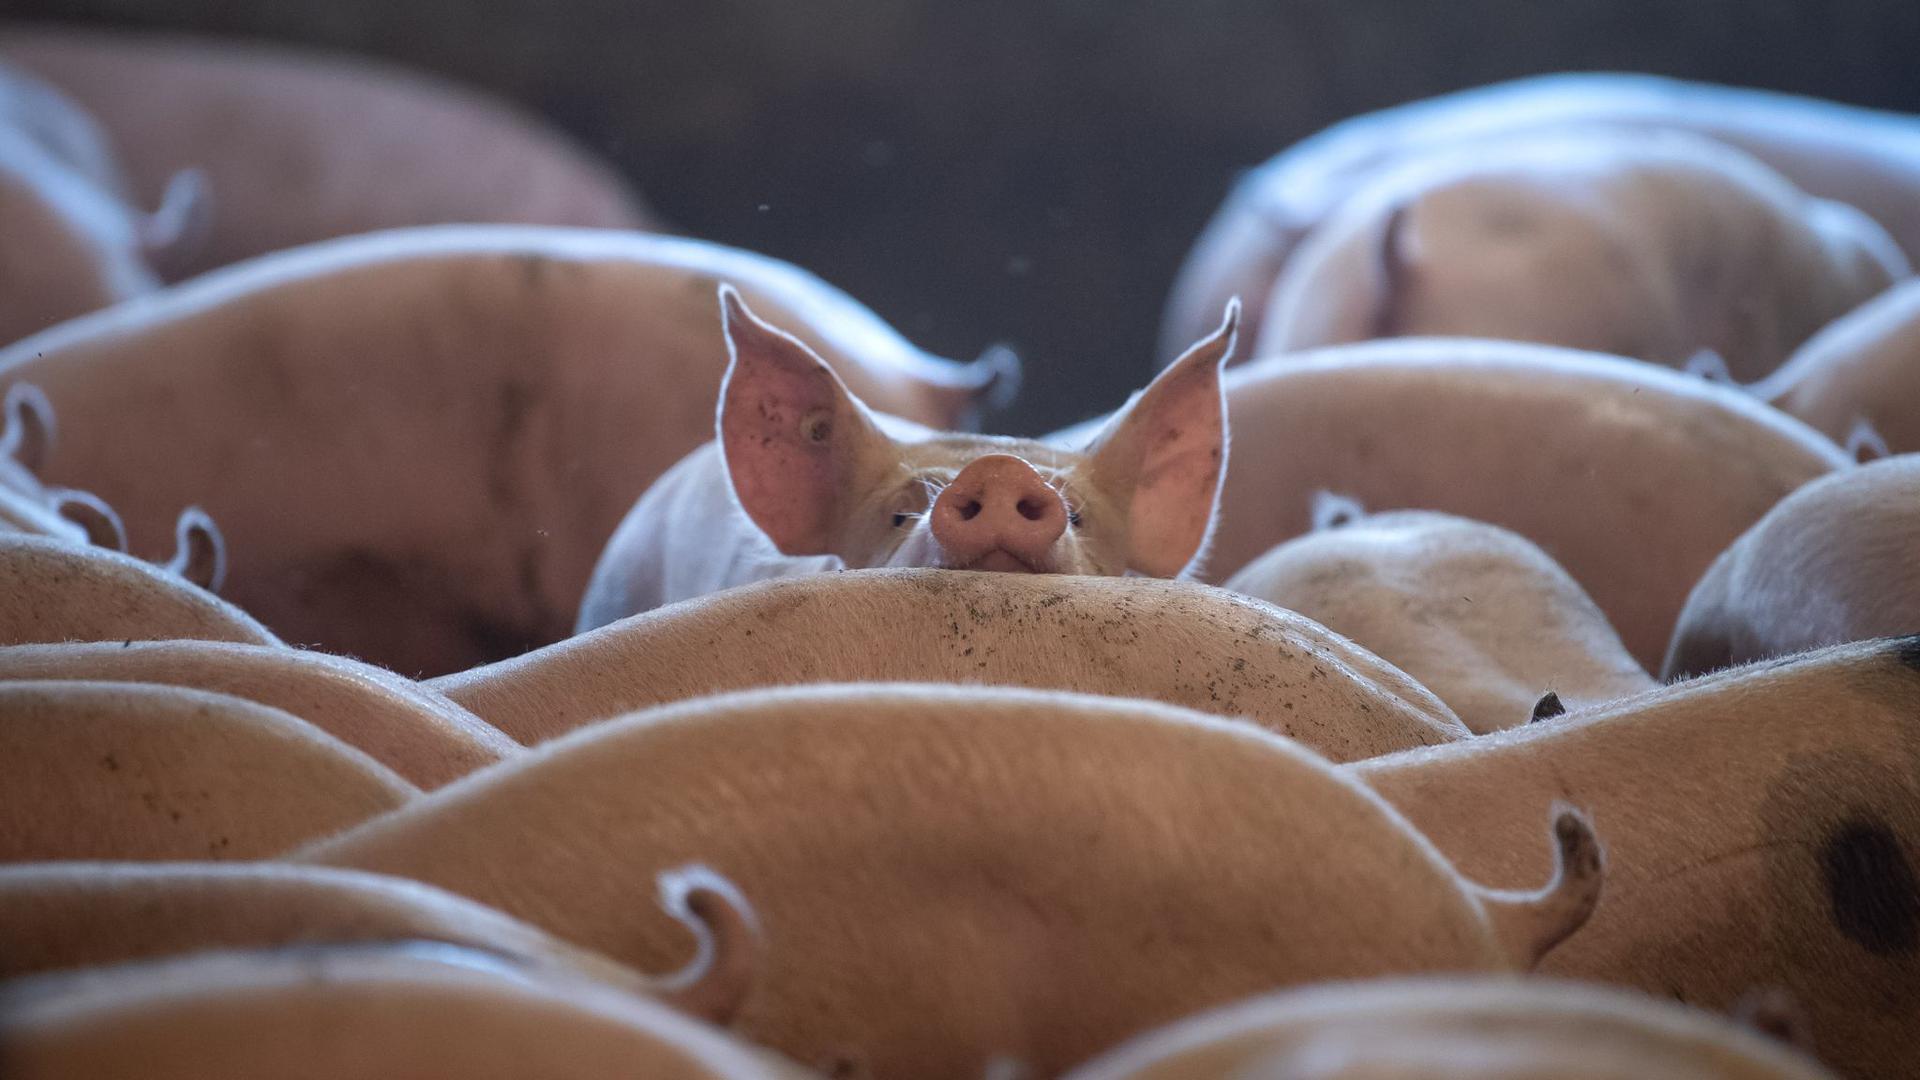 Schweine stehen in einem Stall. Seit die Afrikanische Schweinepest (ASP) nach Deutschland vorgedrungen ist, müssen Bauern noch penibler auf Hygiene im Stall achten.